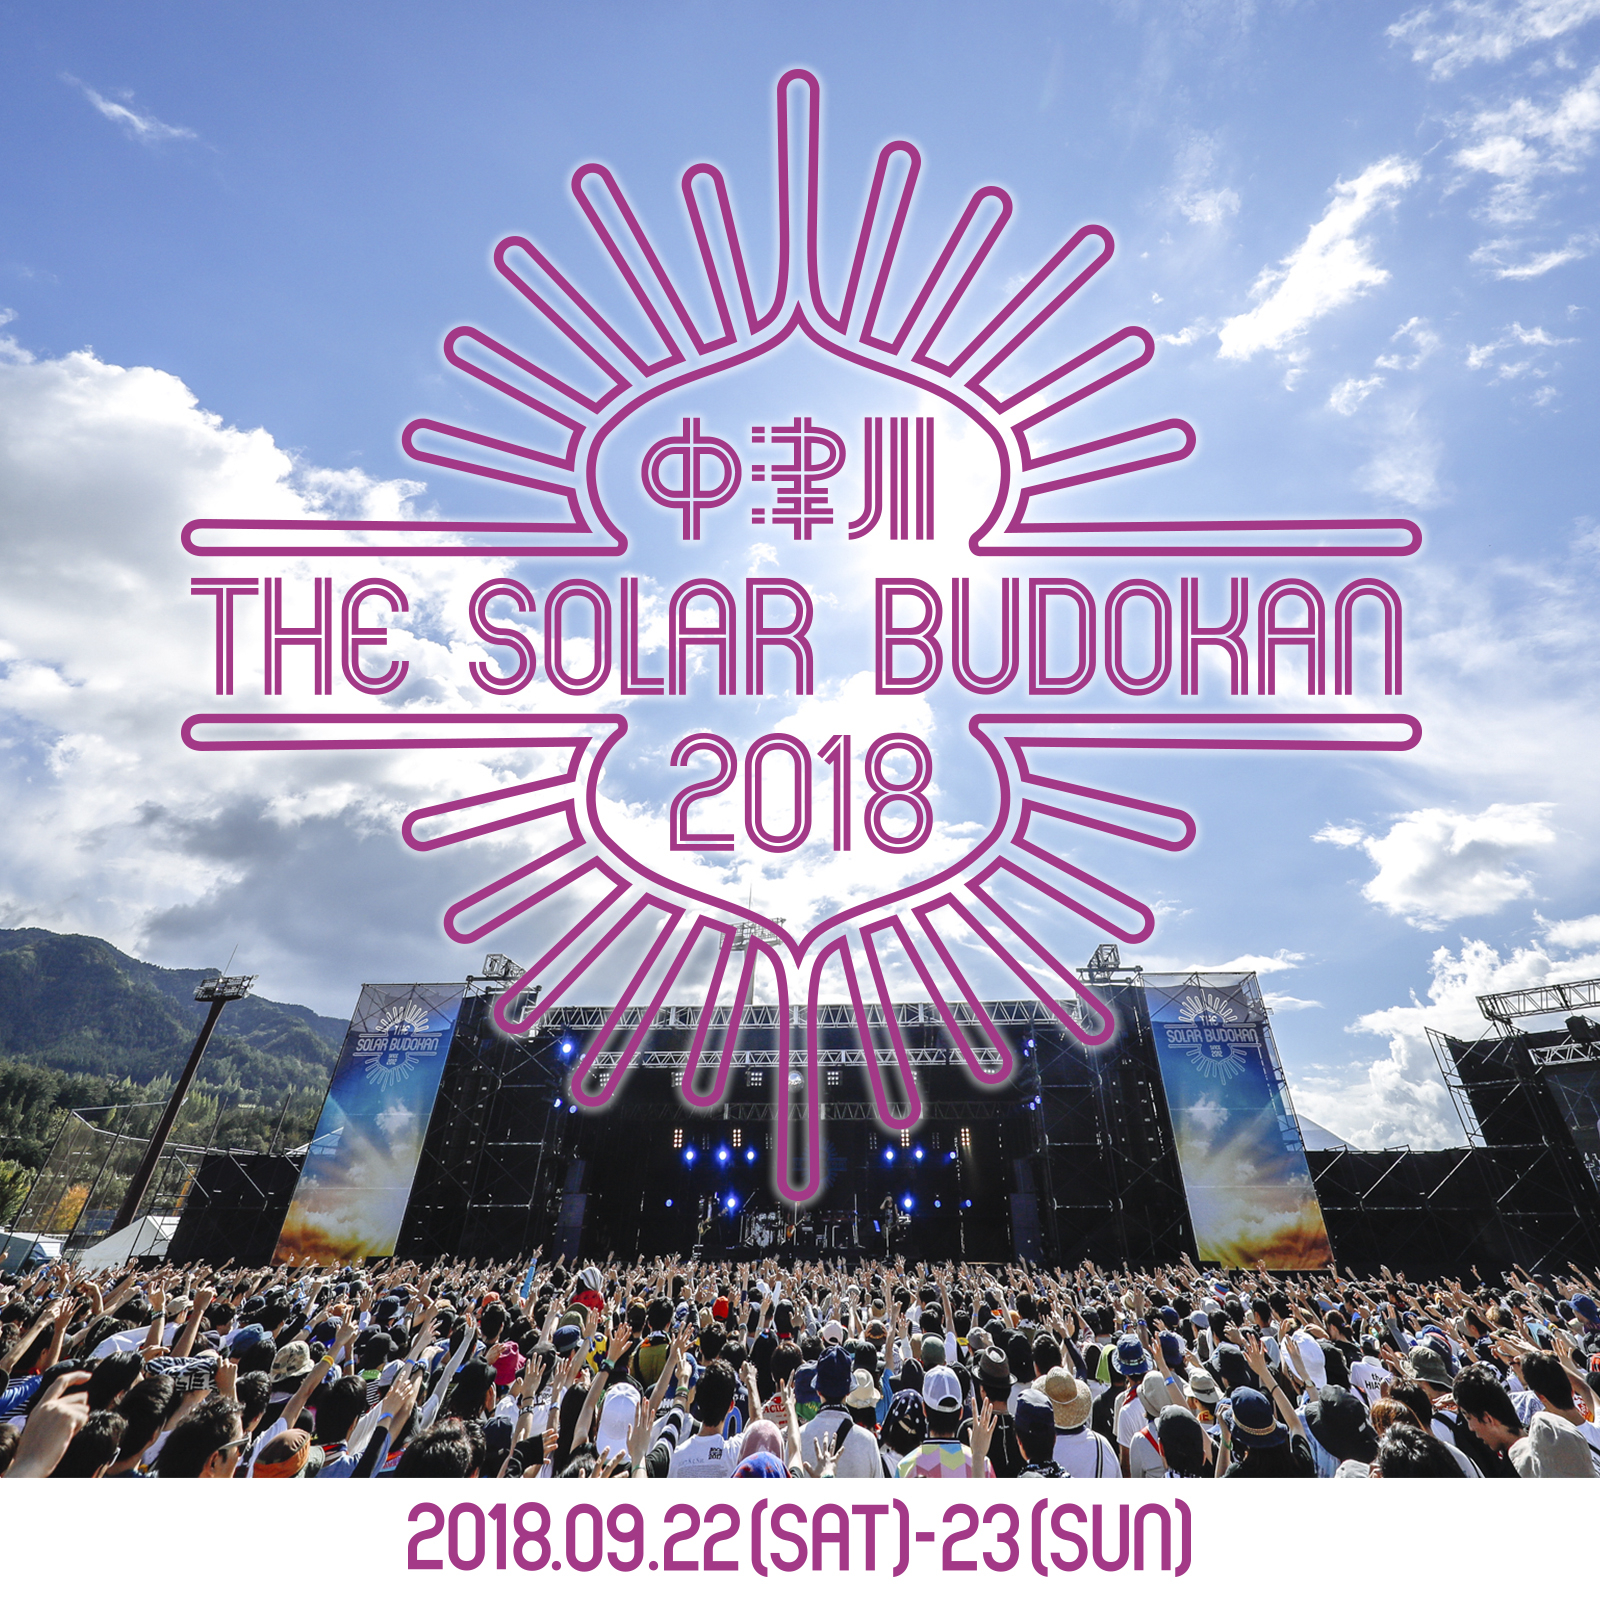  THE SOLAR BUDOKAN 2018